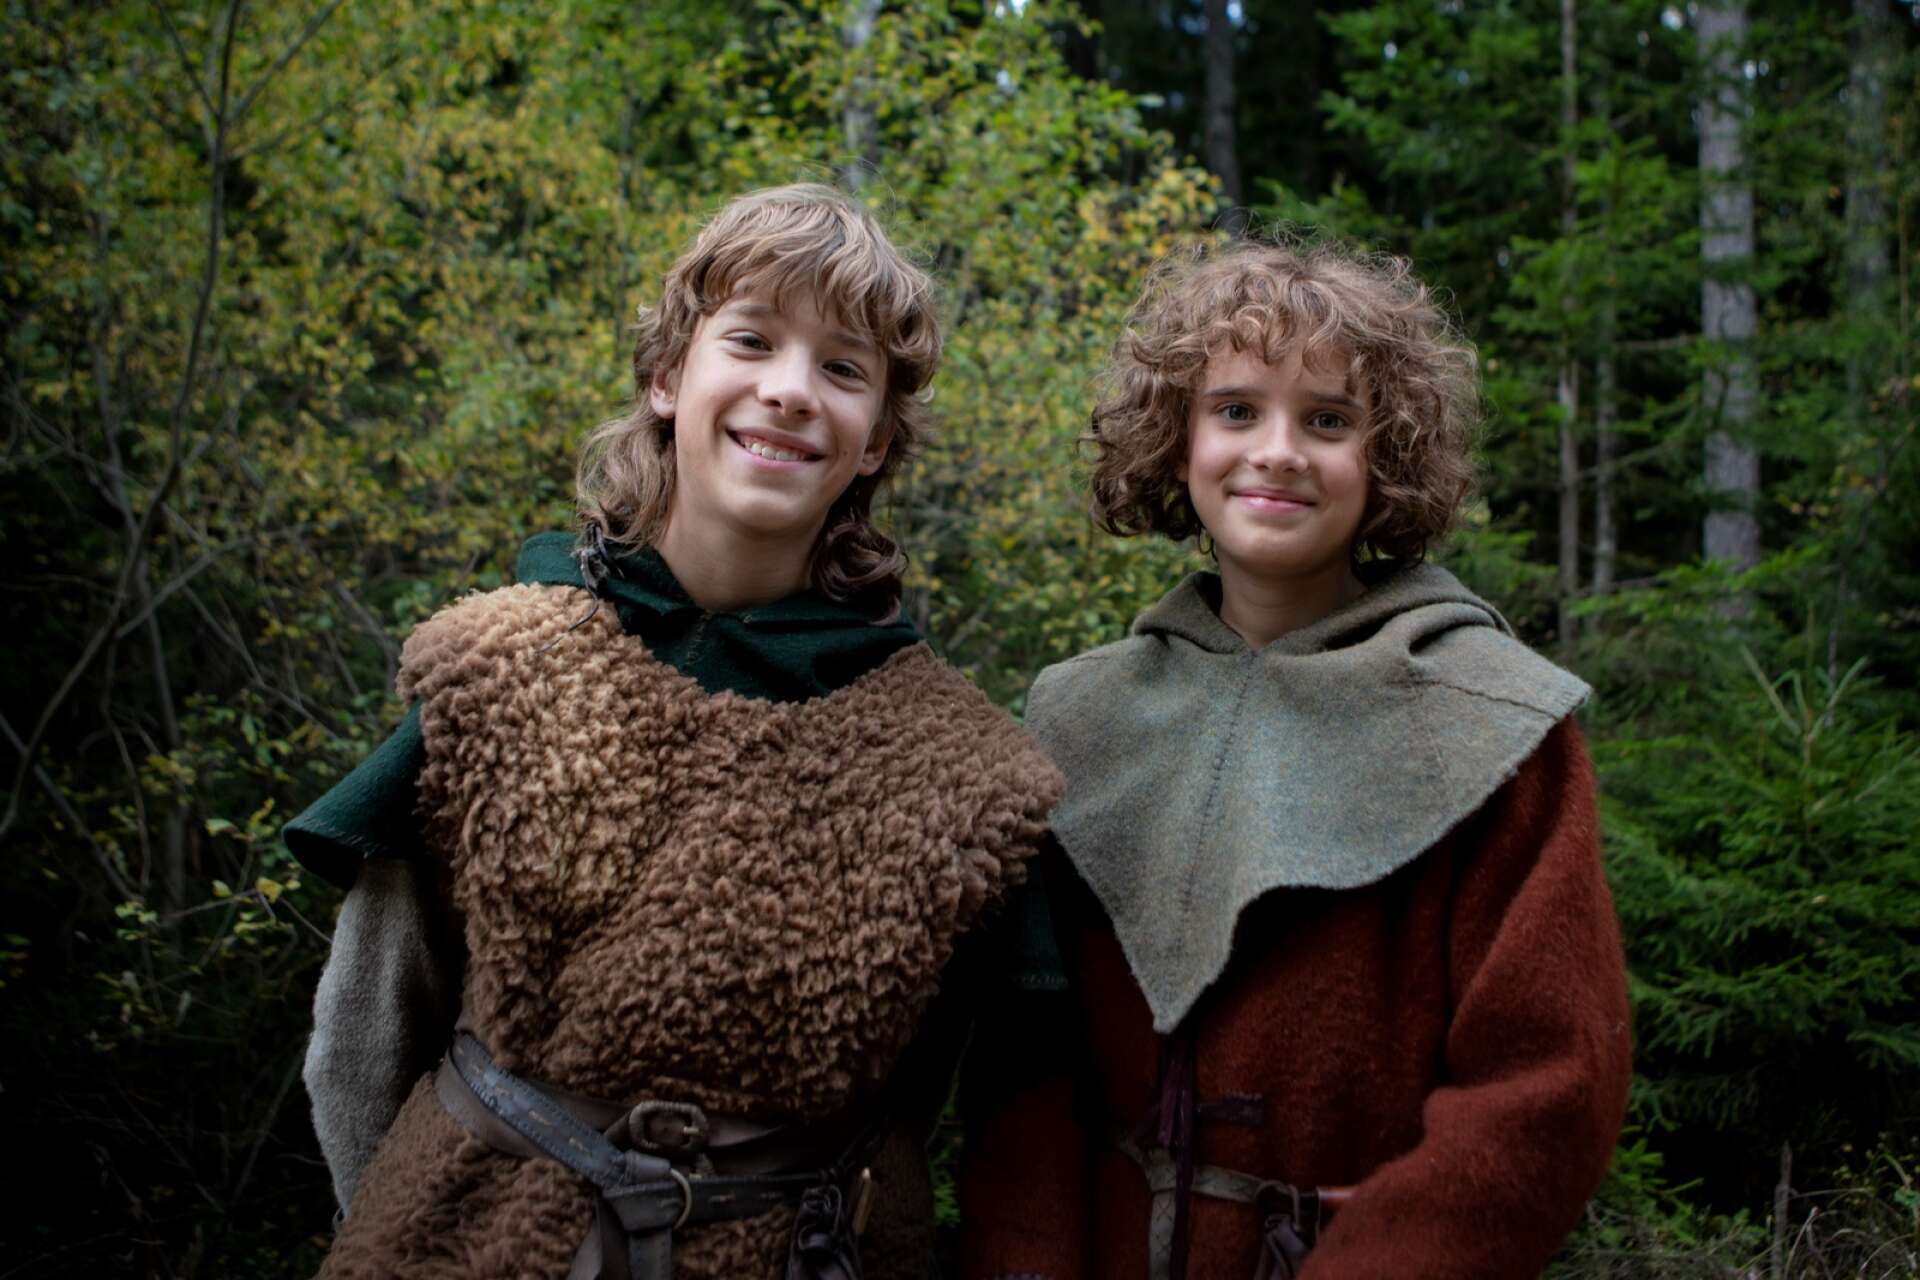 Jack Bergenholtz Henriksson, 13, spelar Birk Borkason och Kerstin Linden, 14, spelar Ronja Rövardotter i den nya tv-serien baserad på Astrid Lindgrens berättelse.